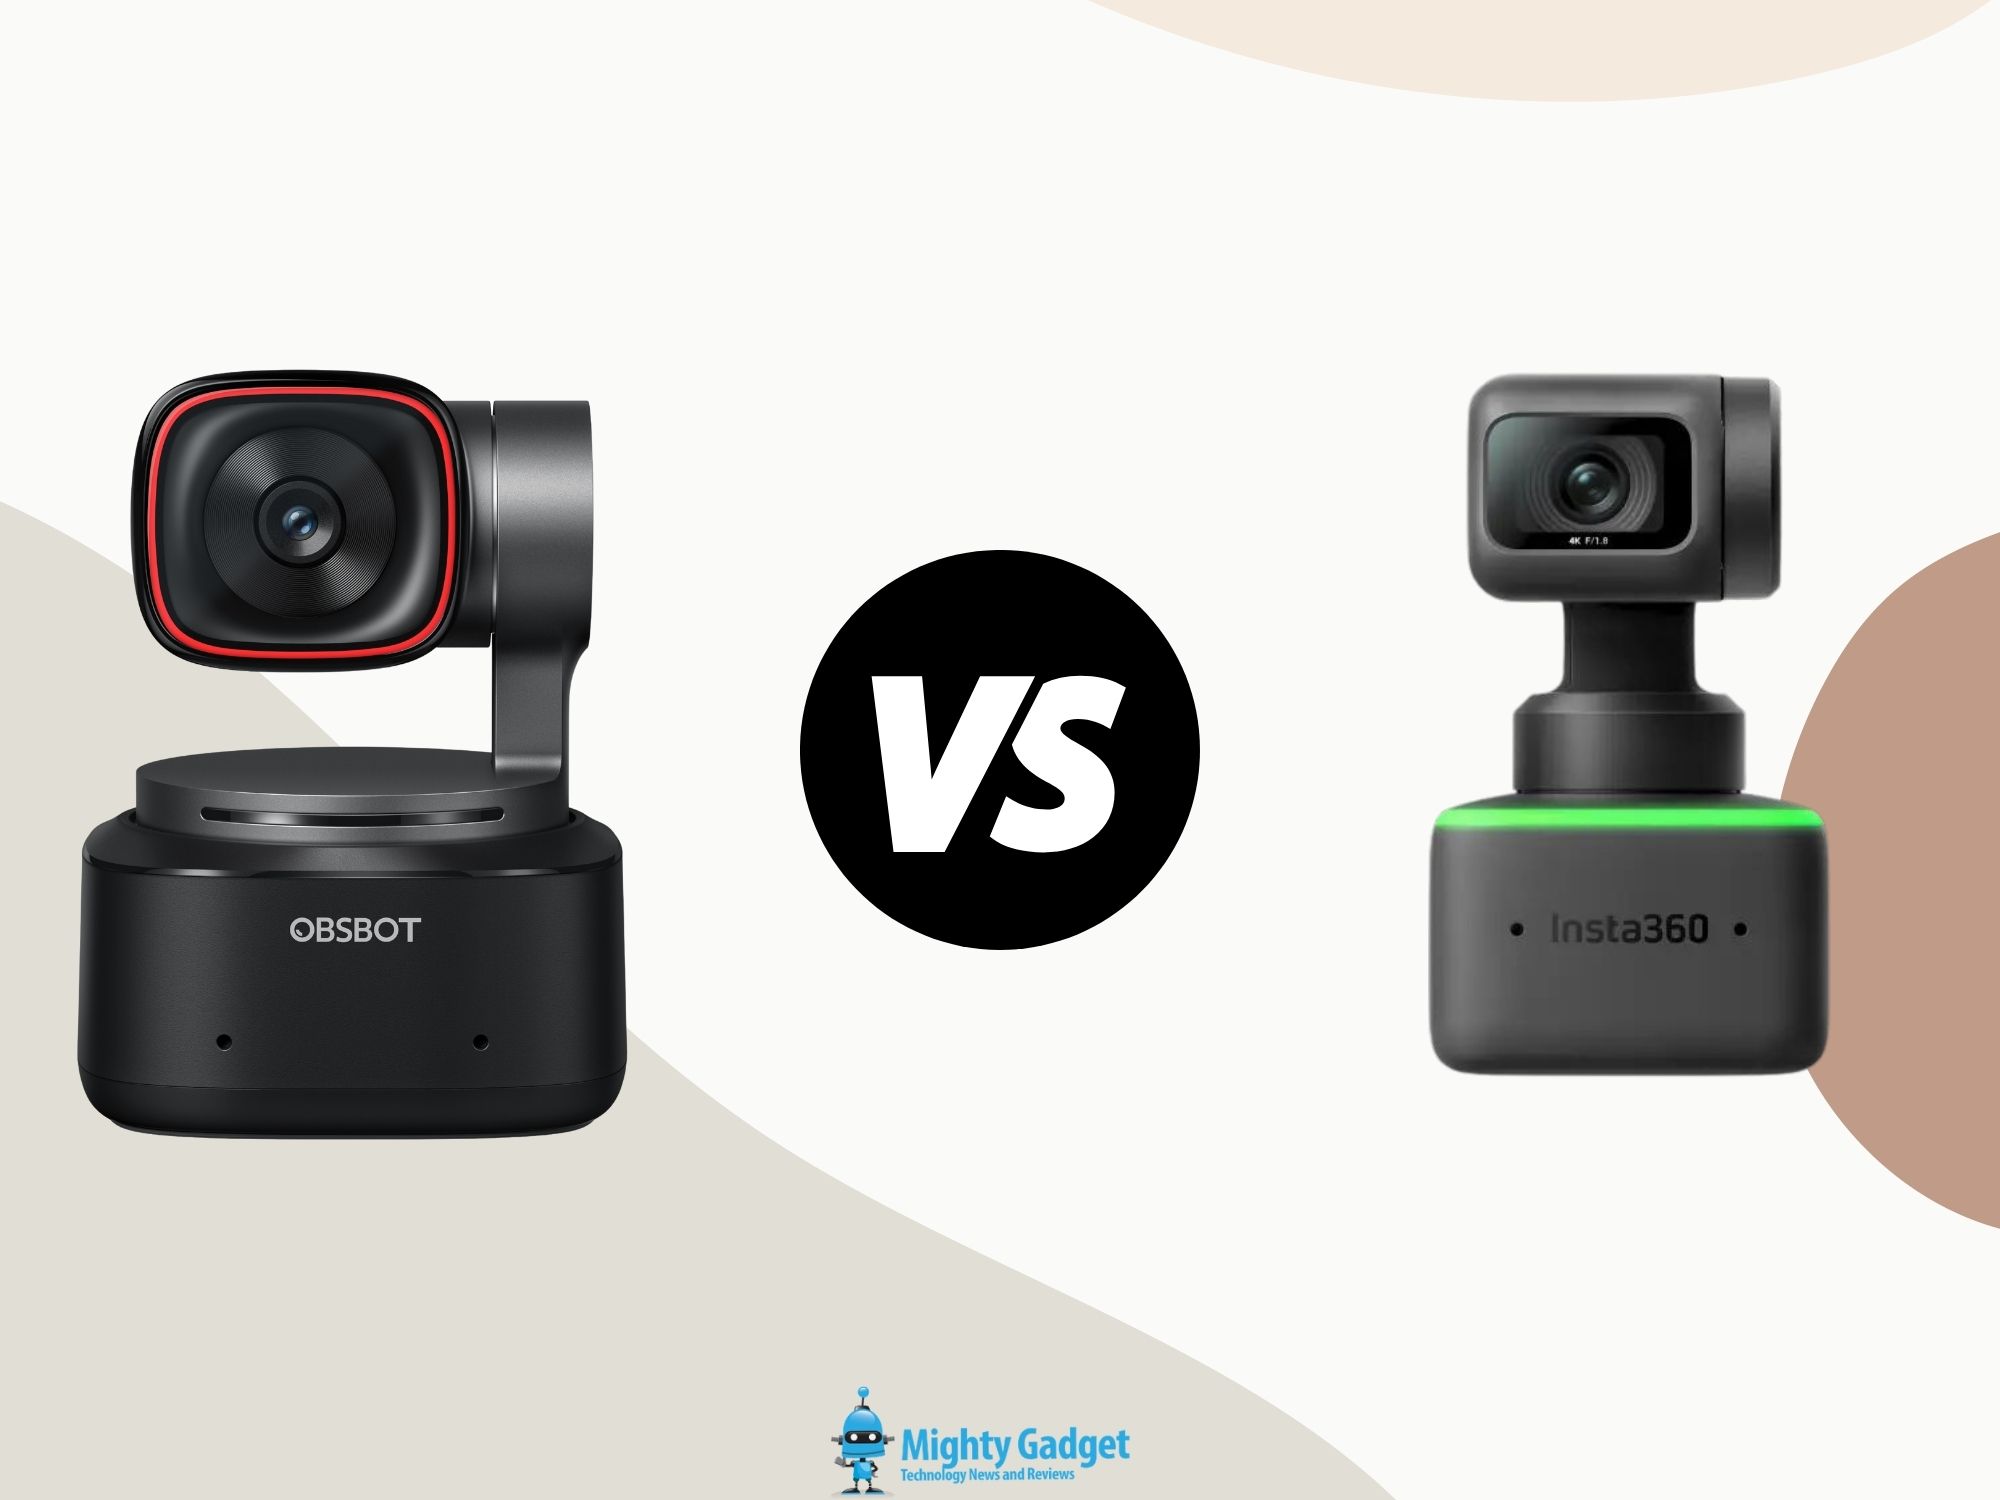 OBSBOT Tiny 2 vs Insta360 Link AI PTZ 4K Webcam Comparison – Tiny 2 is cheaper and has a bigger 1.5” sensor